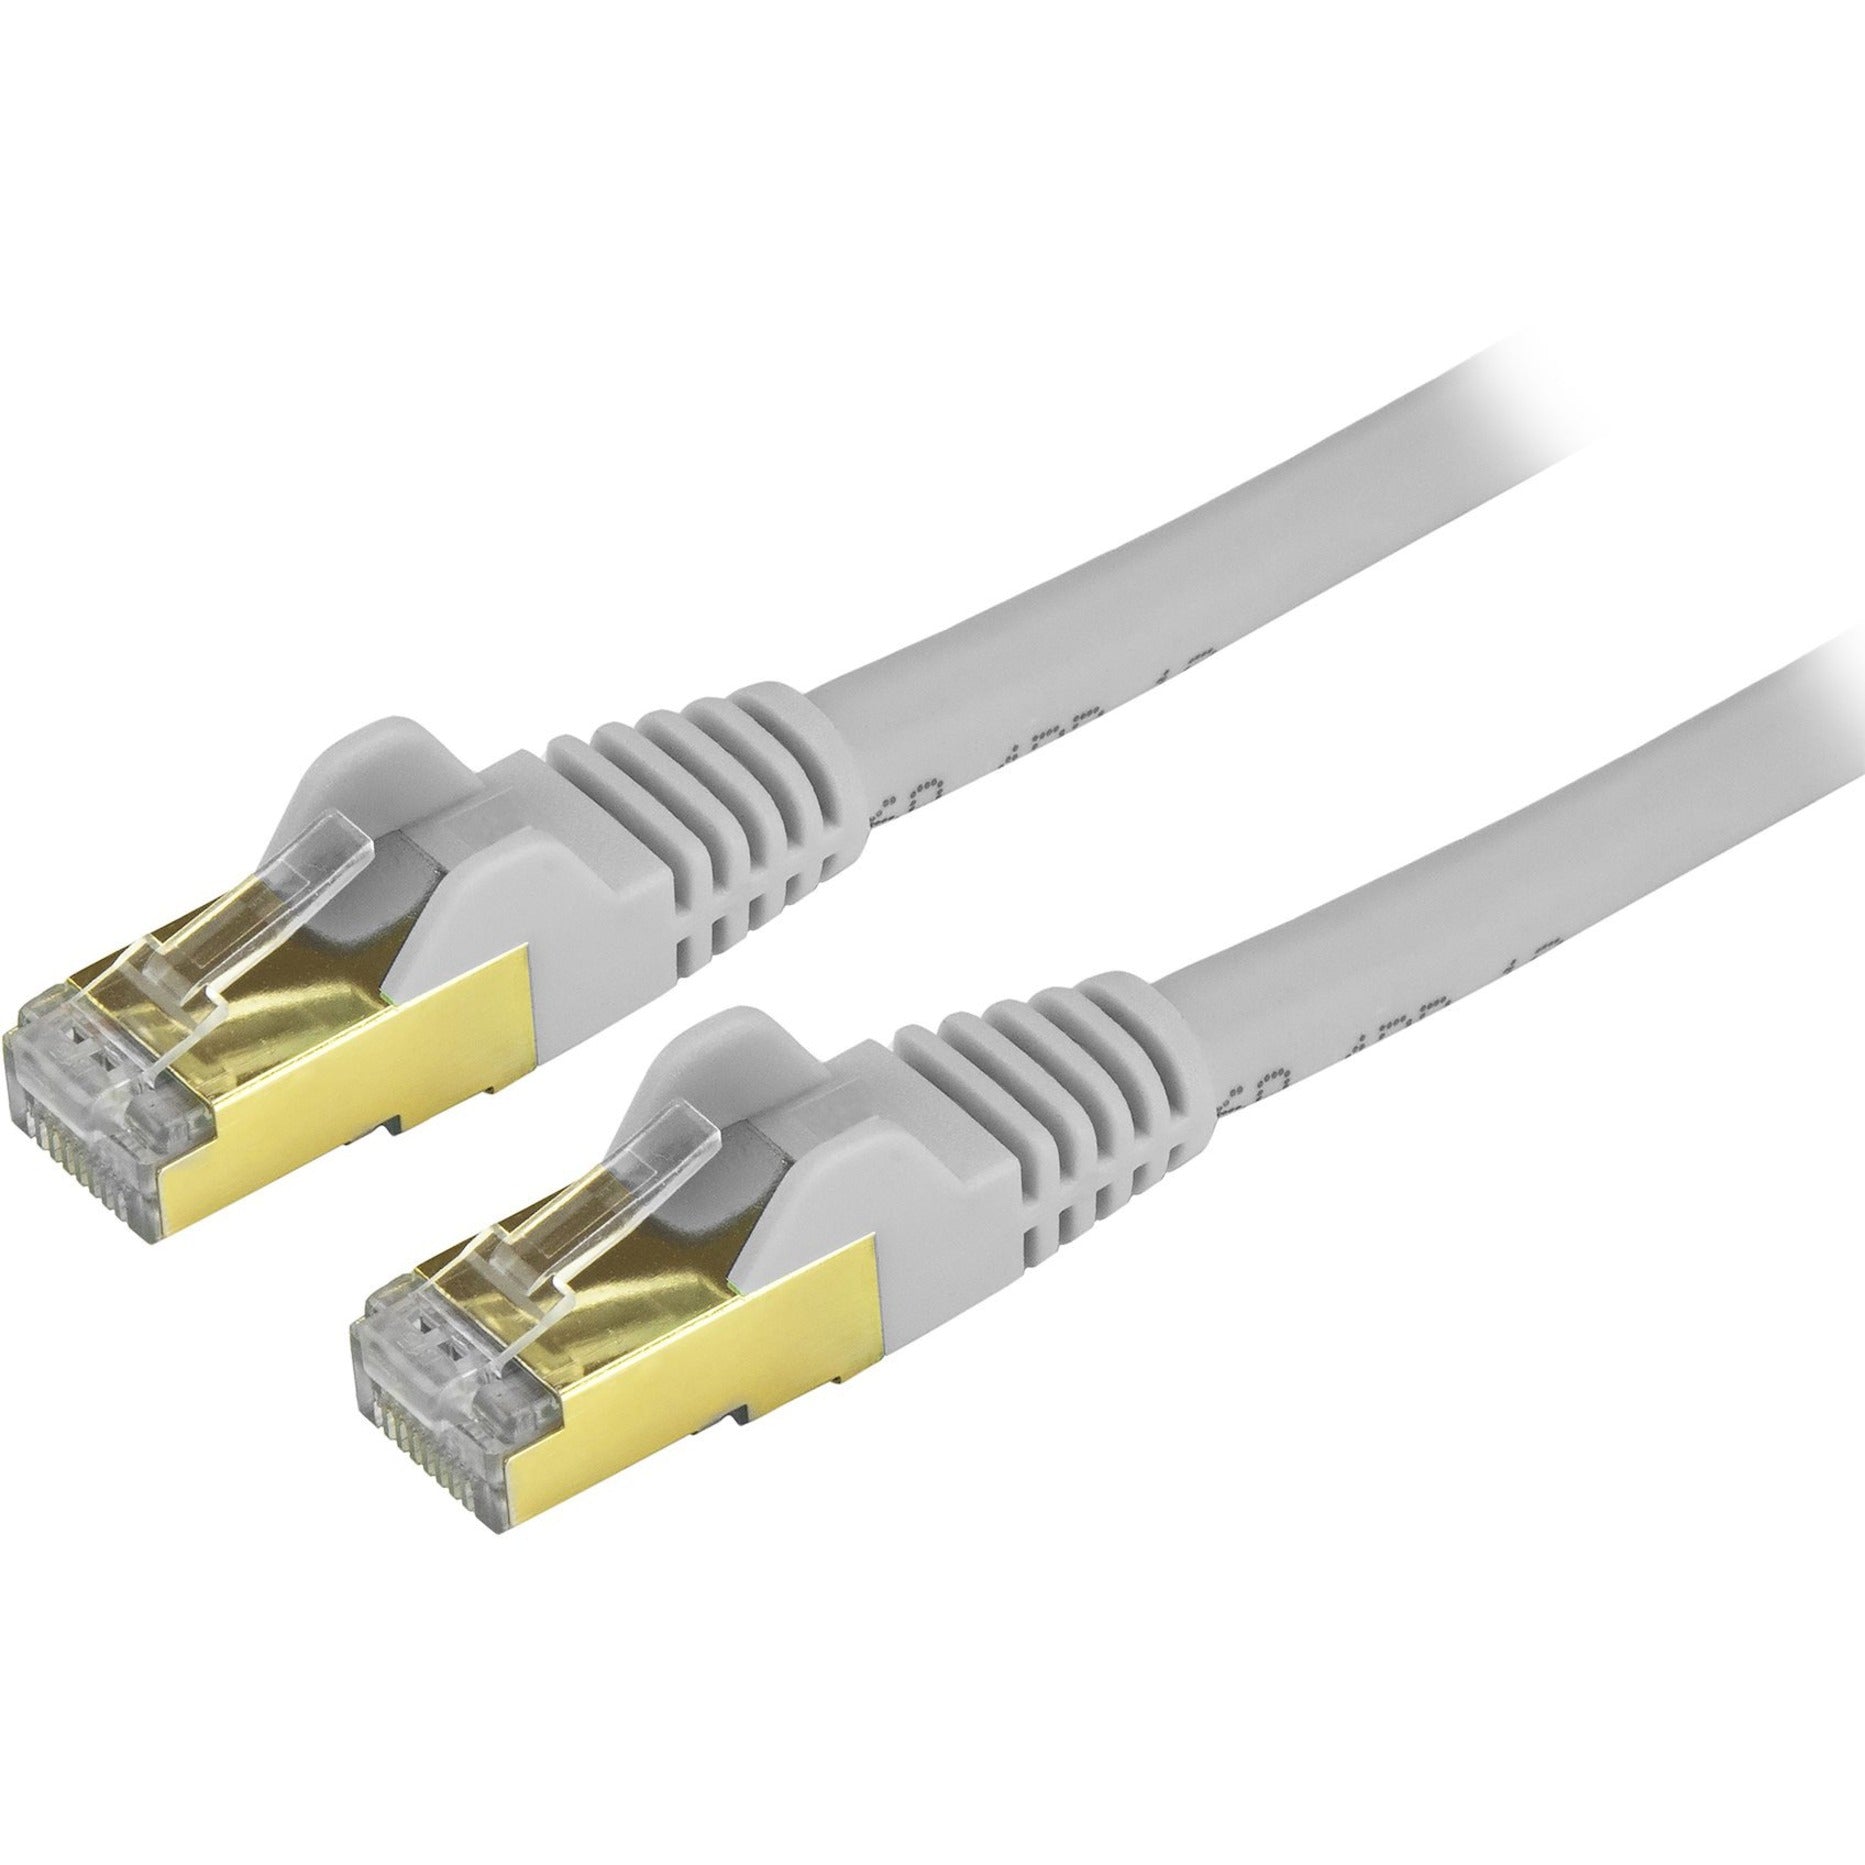 StarTech.com C6ASPAT30GR Cat6a Ethernet Patch Cable - Shielded (STP) - 30 ft., Gray, Long Ethernet Cord